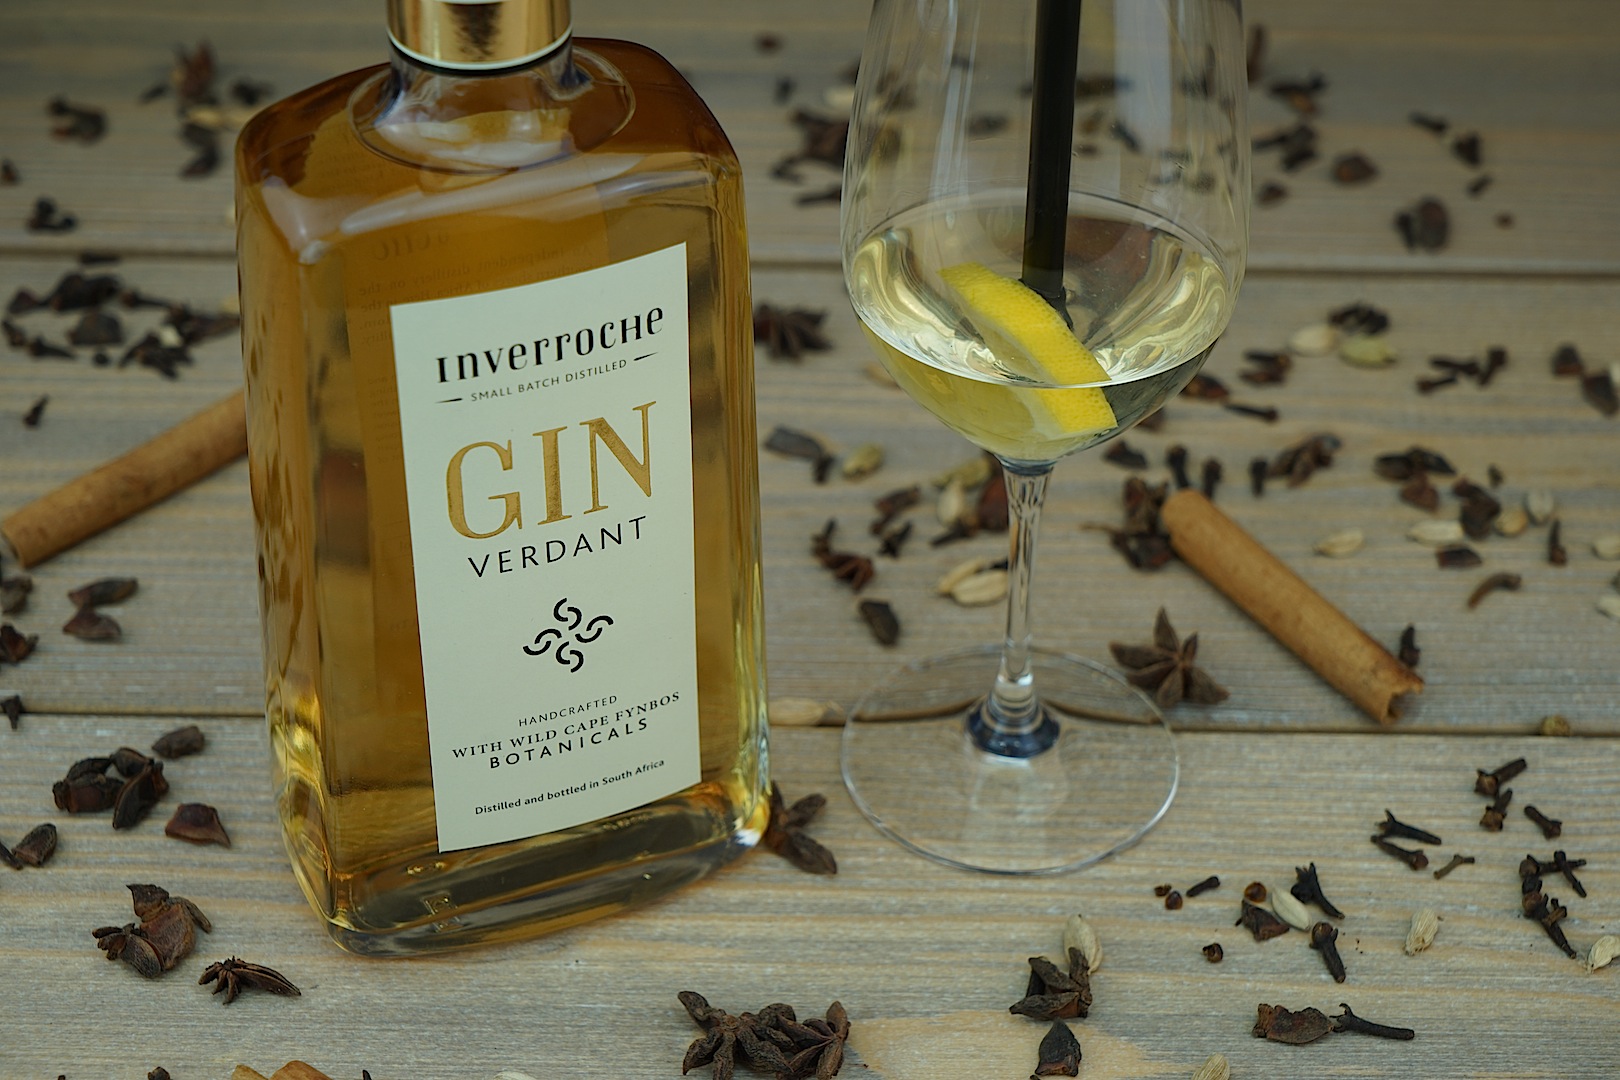 Der Gin Inverroche Verdant ist ein authentischer südafrikanischer Gin